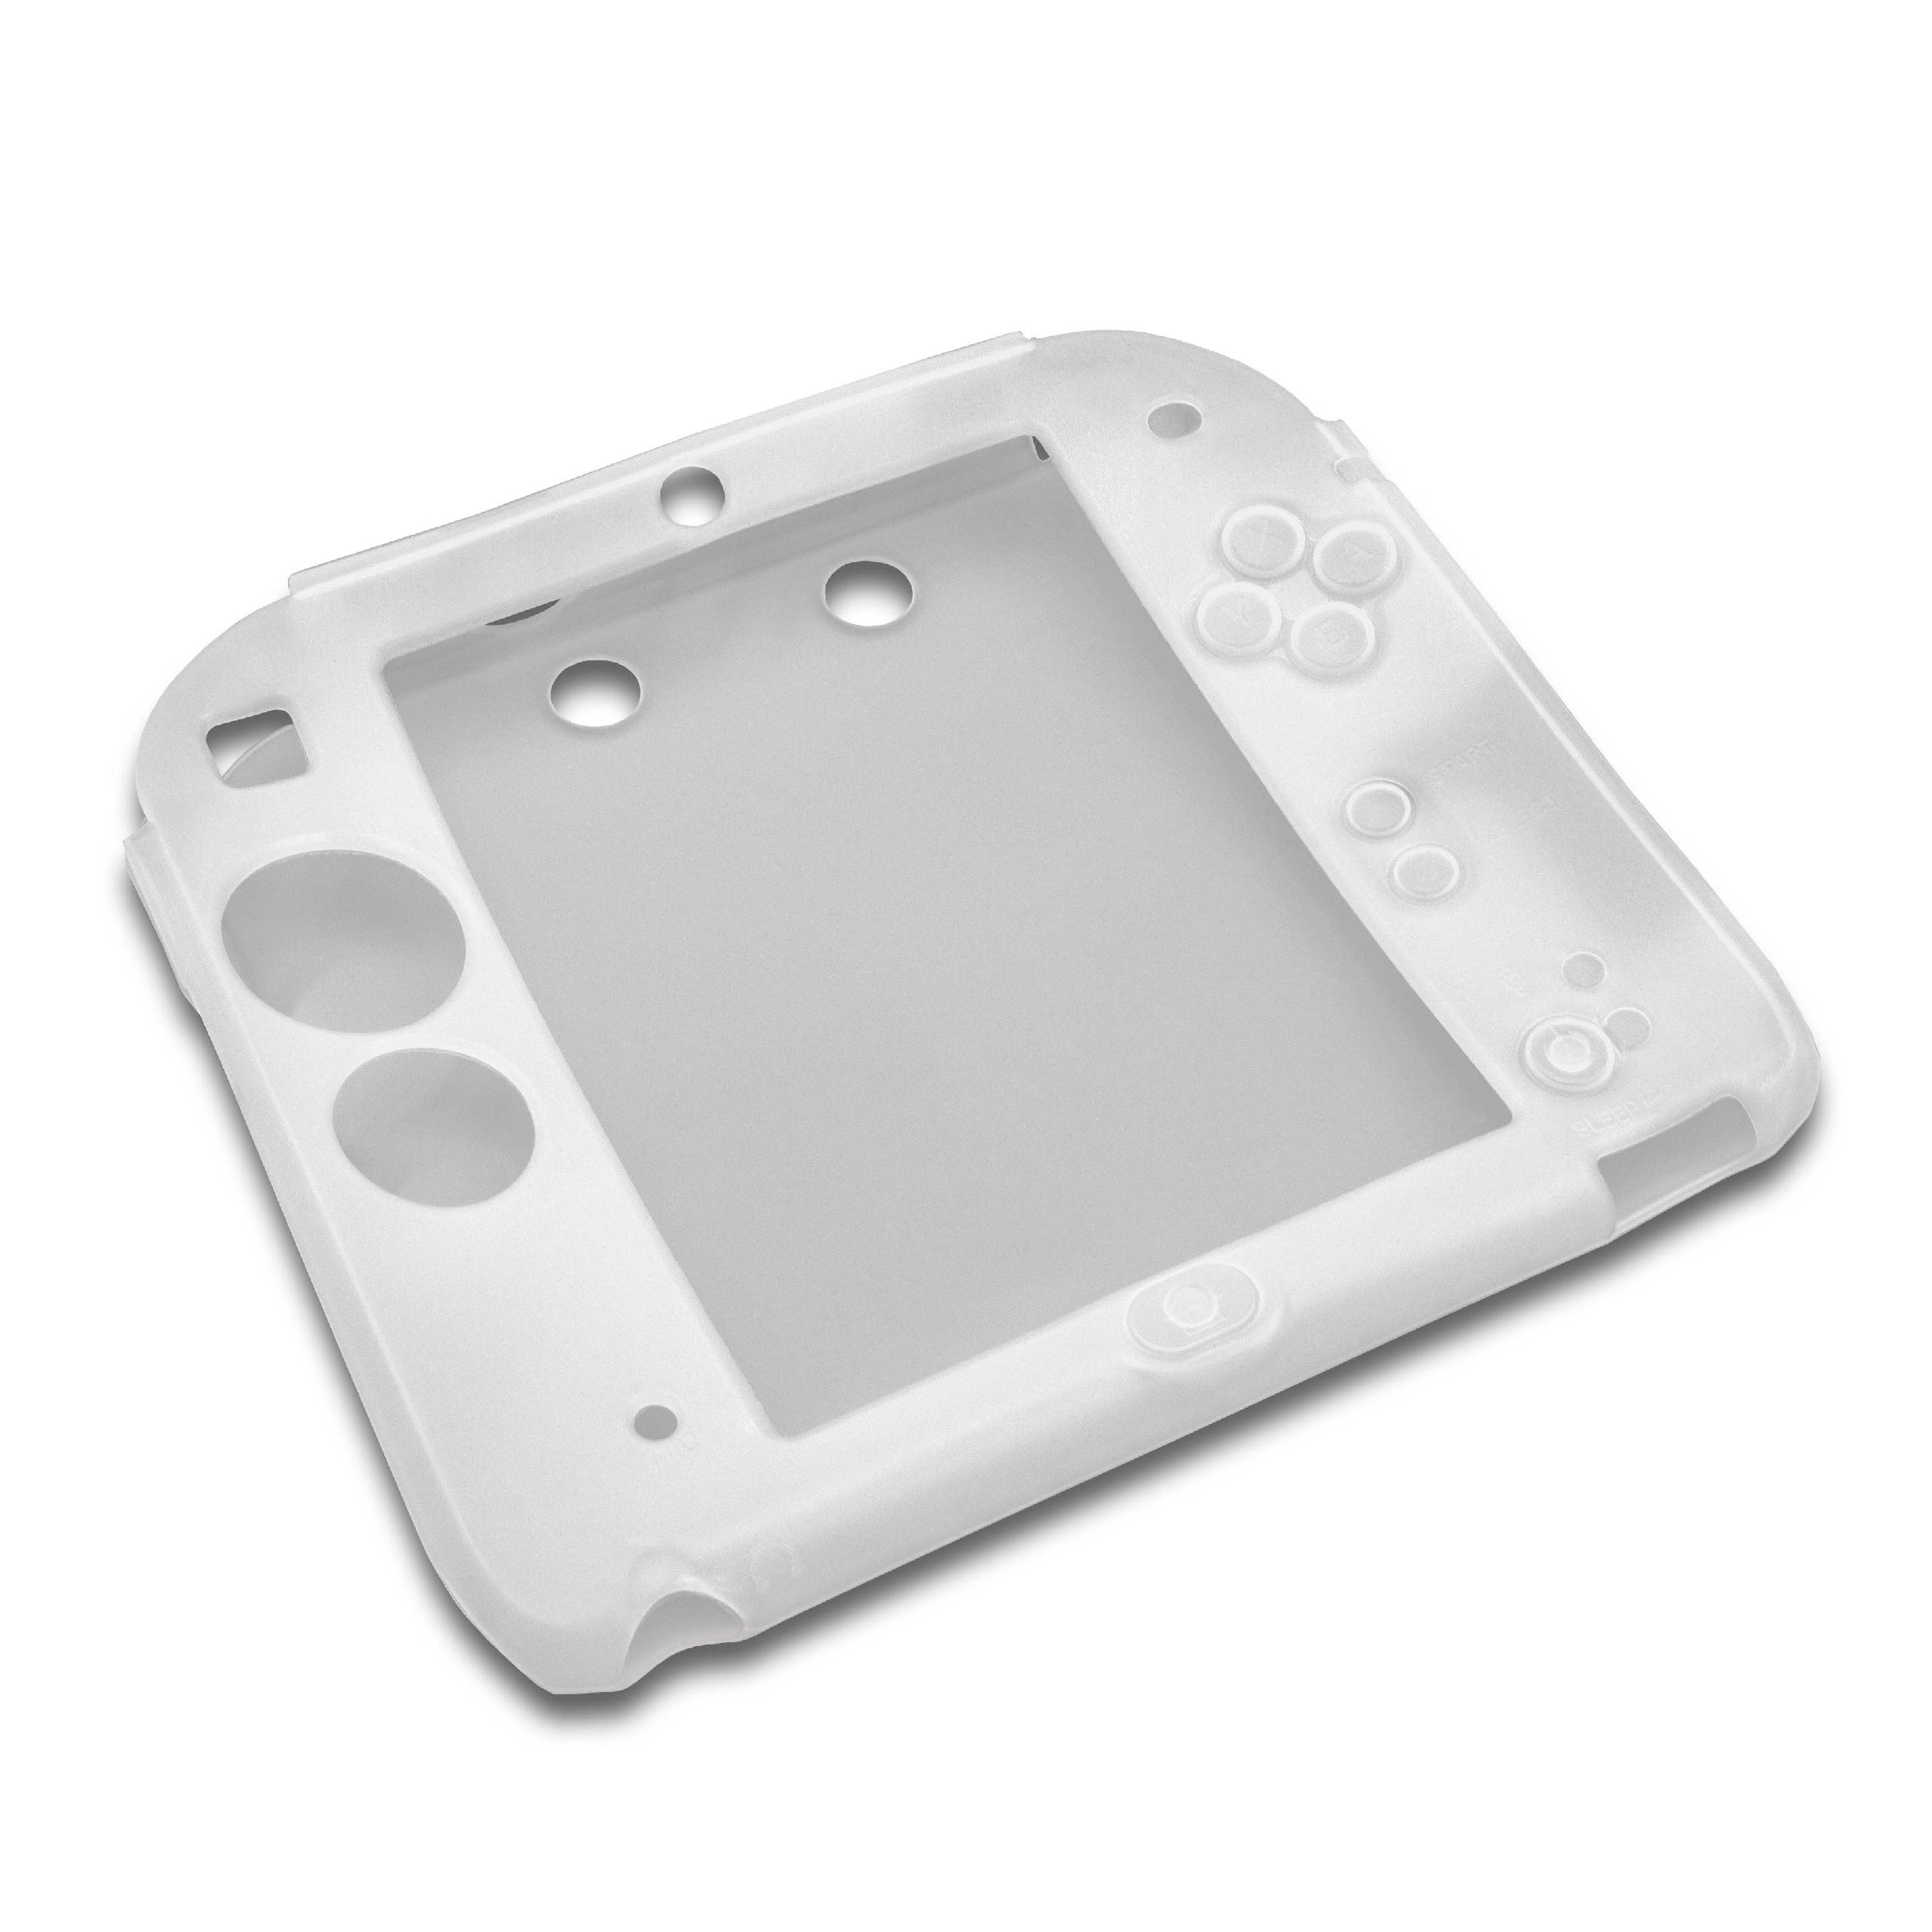 Hülle passend für Nintendo 2DS Spielekonsole - Case Silikon Weiß